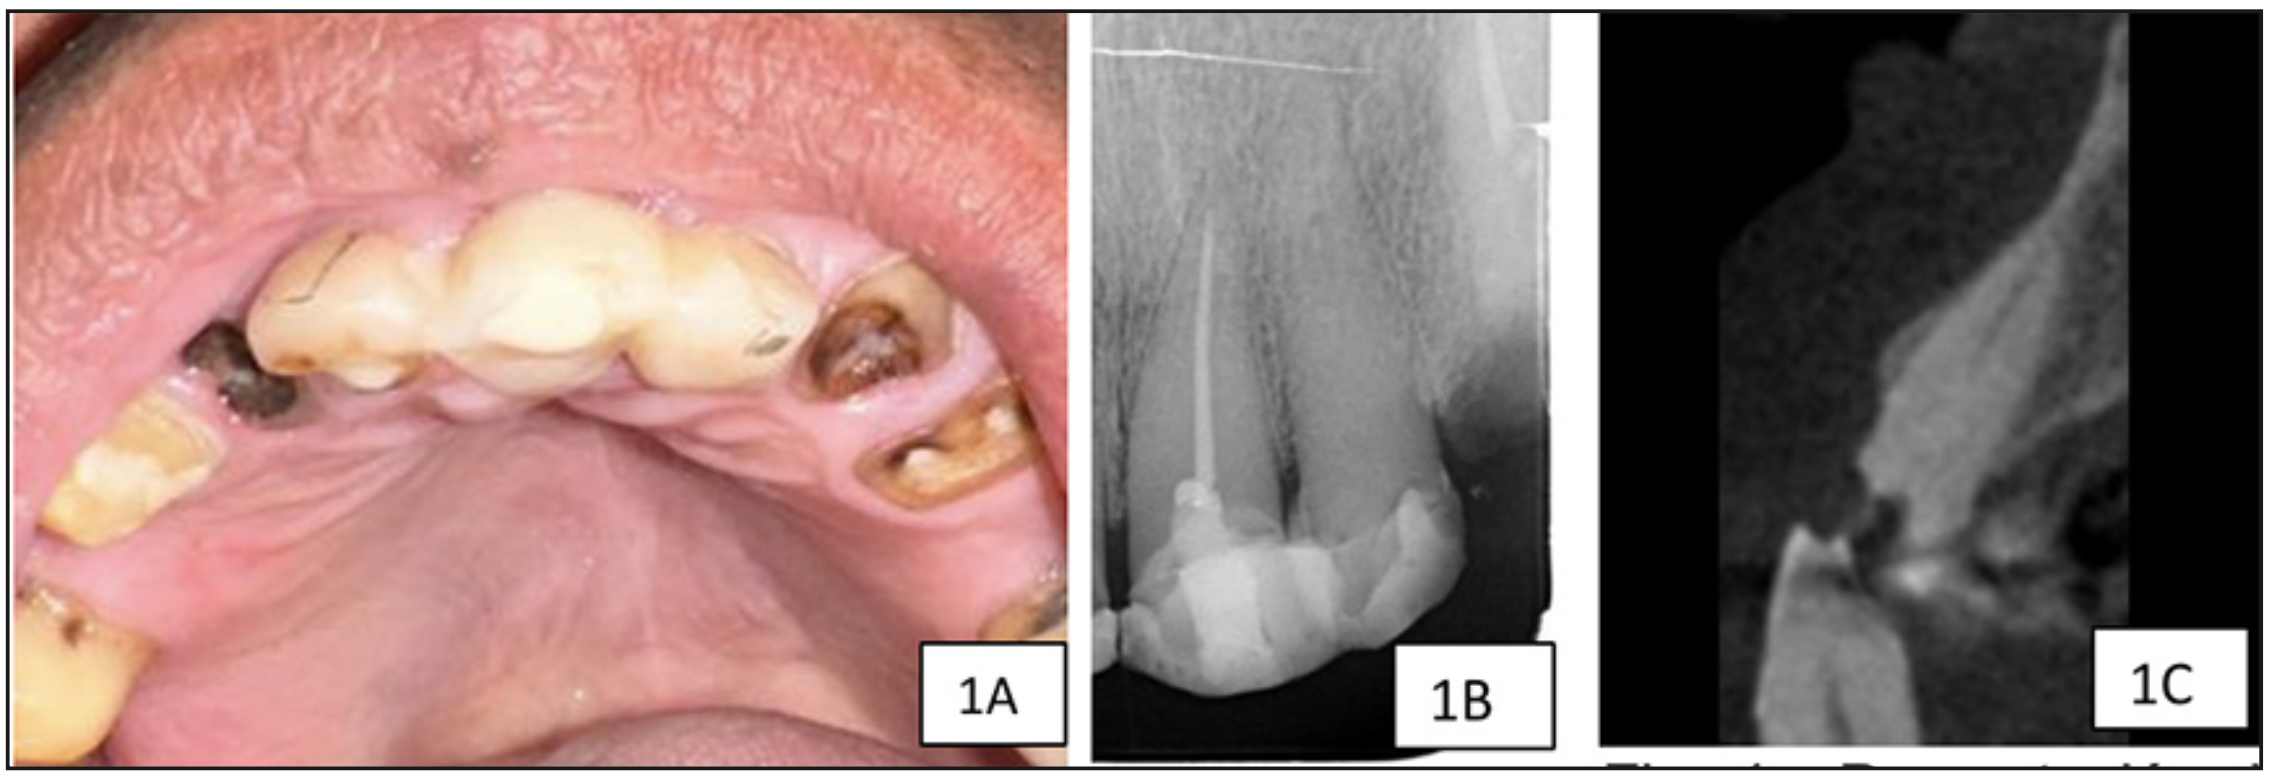 Figura 1 A): PFotografía clínica, B): radiografía periapical previa y C): TCHC previa del diente 2.2. Se observa restauración extensa, calcificación de cámara y canal hasta tercio medio